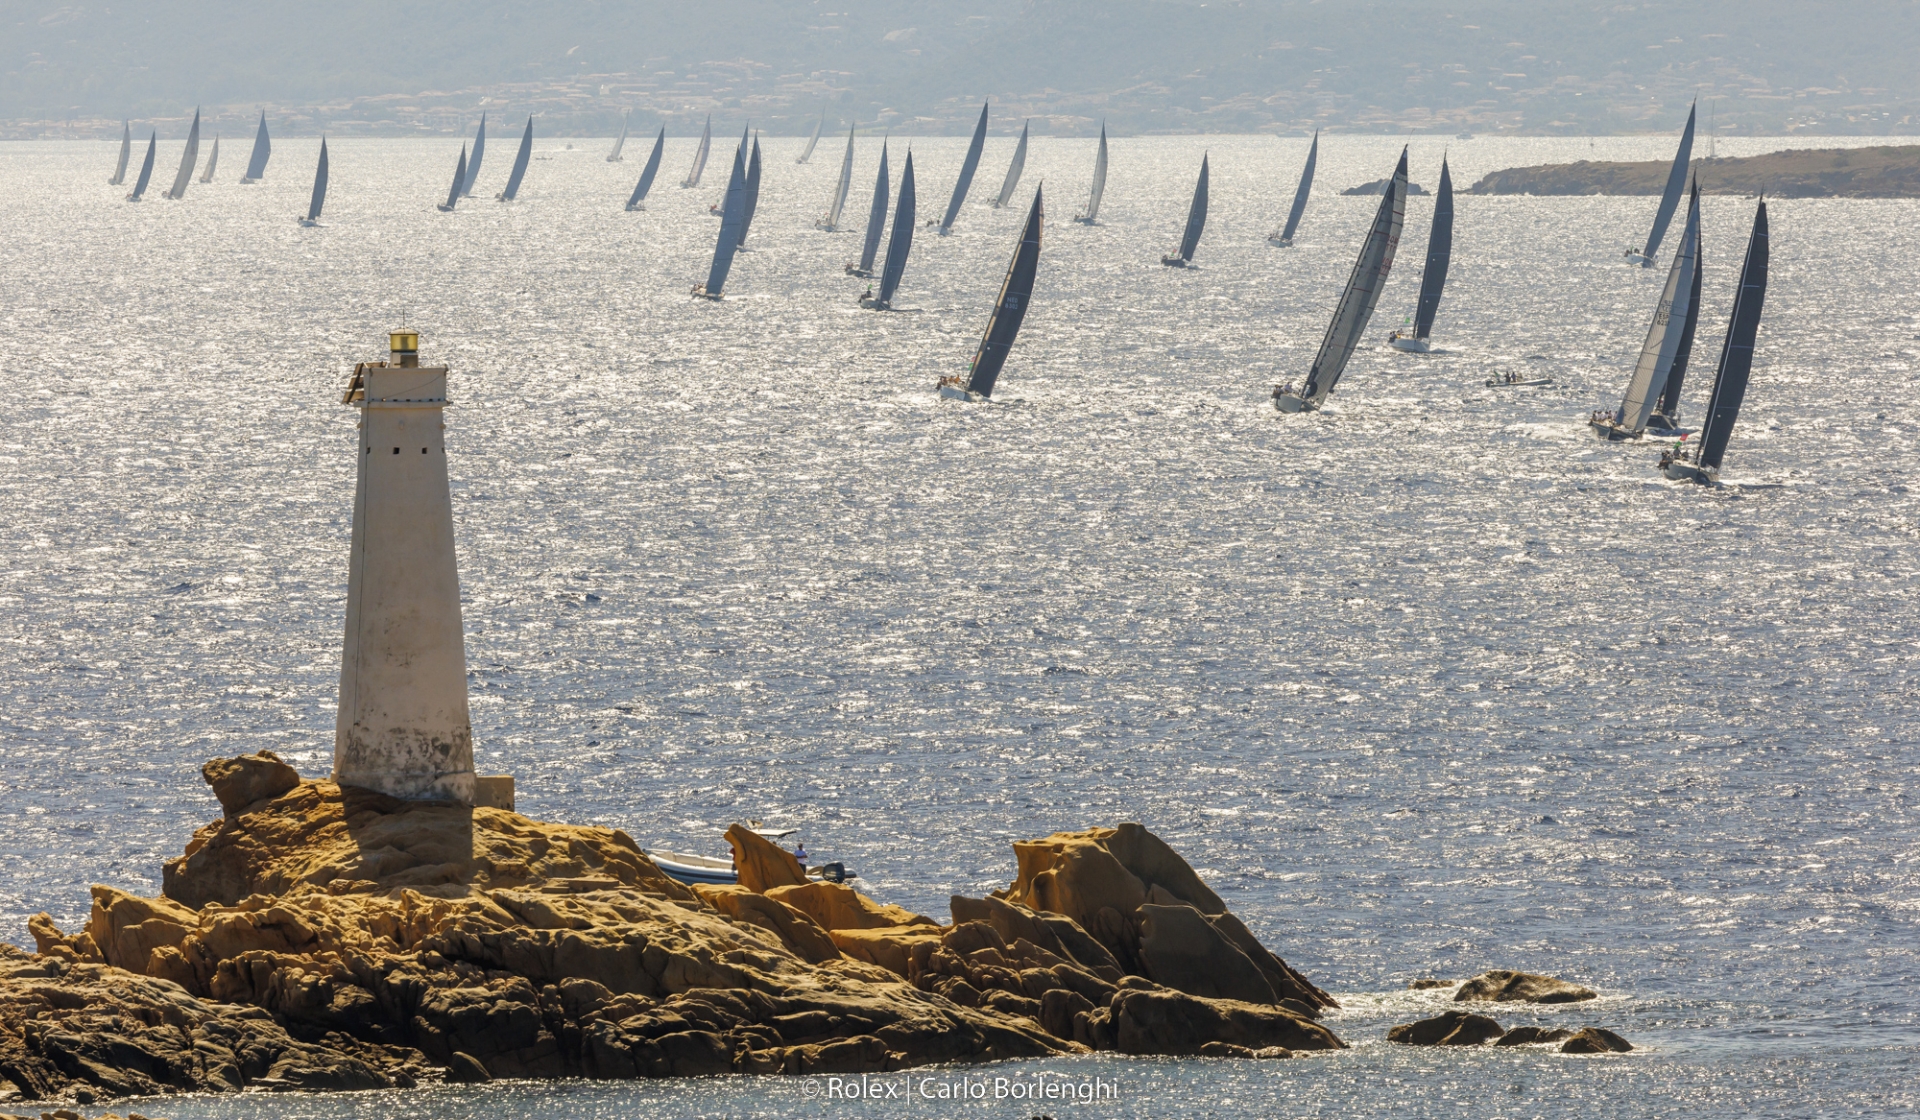 Prima giornata perfetta per la 21^ Rolex Swan Cup - News - Yacht Club Costa Smeralda